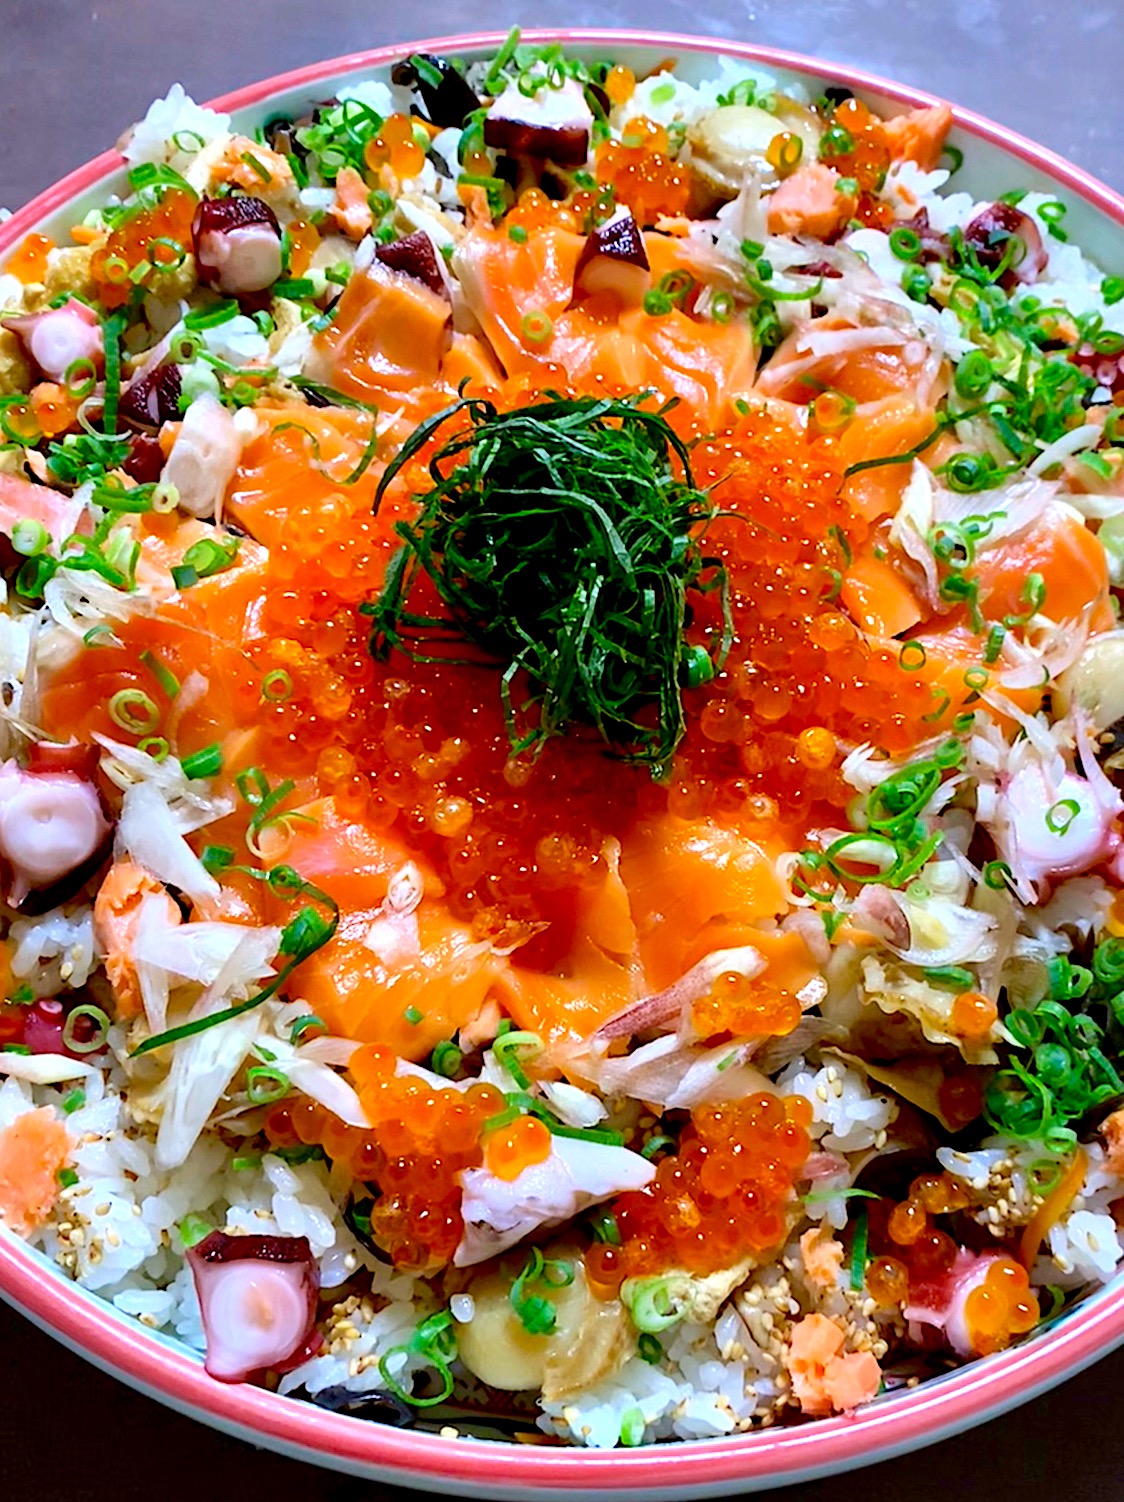 tachiさんの料理 鮭といくらと具沢山の混ぜごはん 至福の混ぜごはんだなぁ〜 🎵